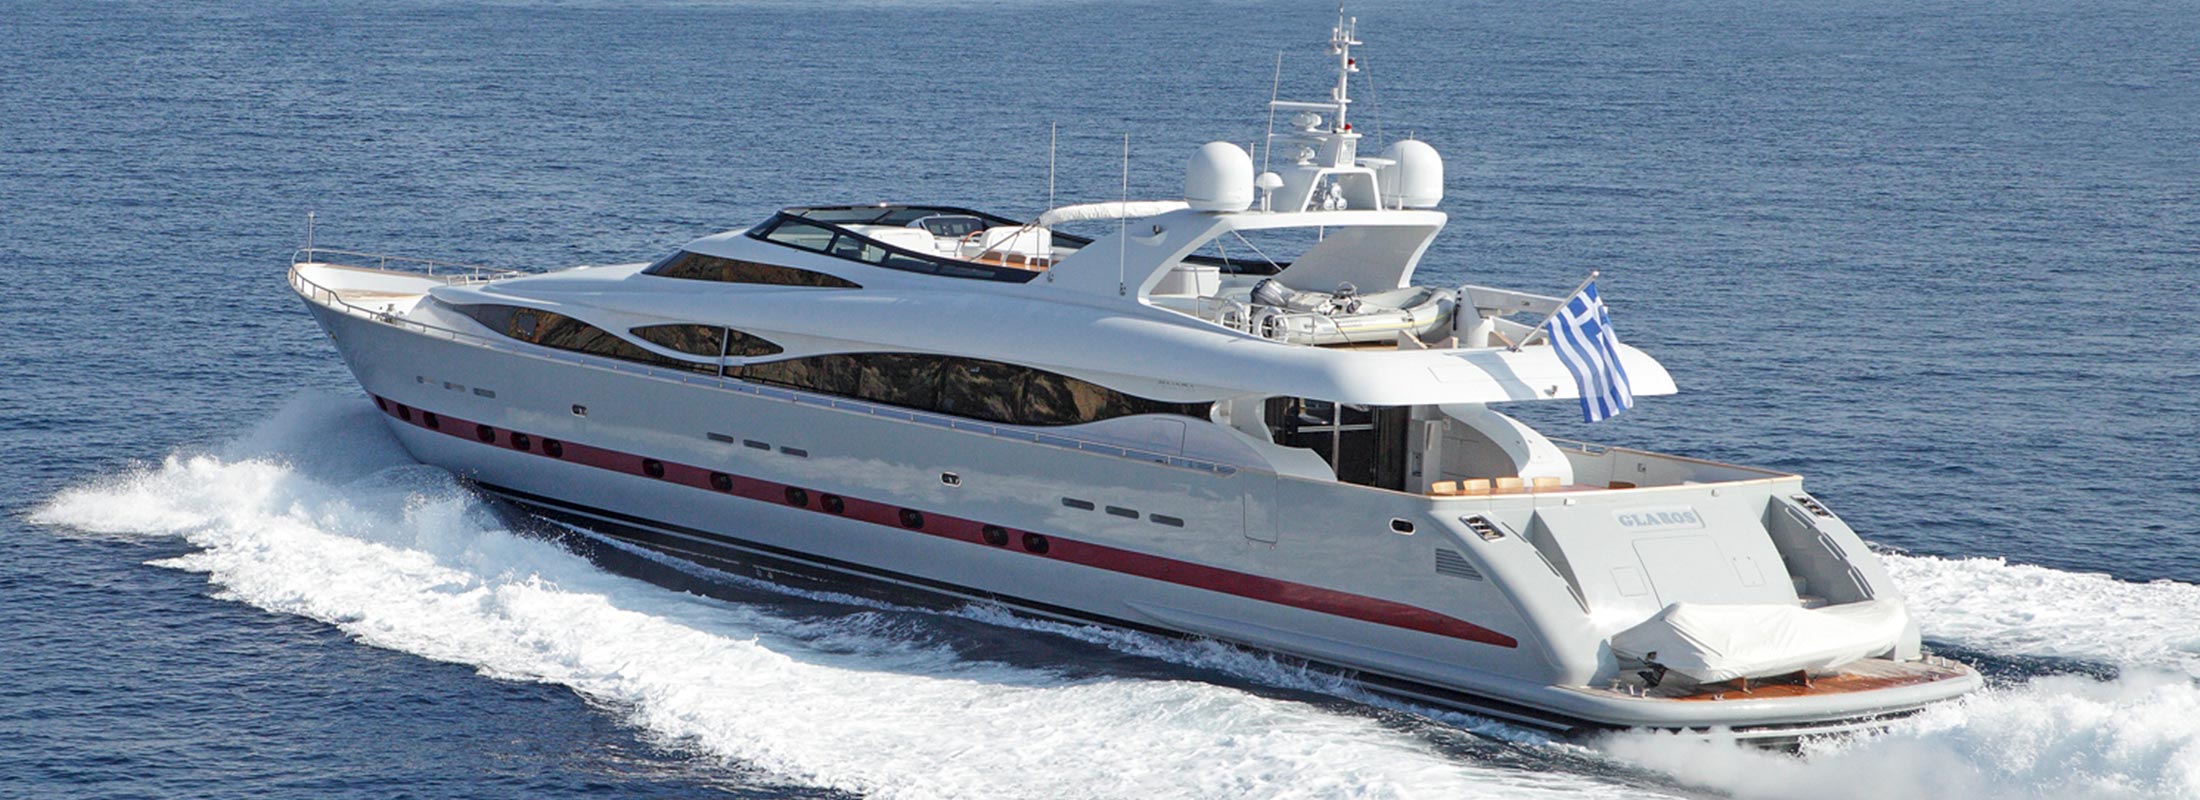 Glaros Motor Yacht for Charter Mediterranean slider 2